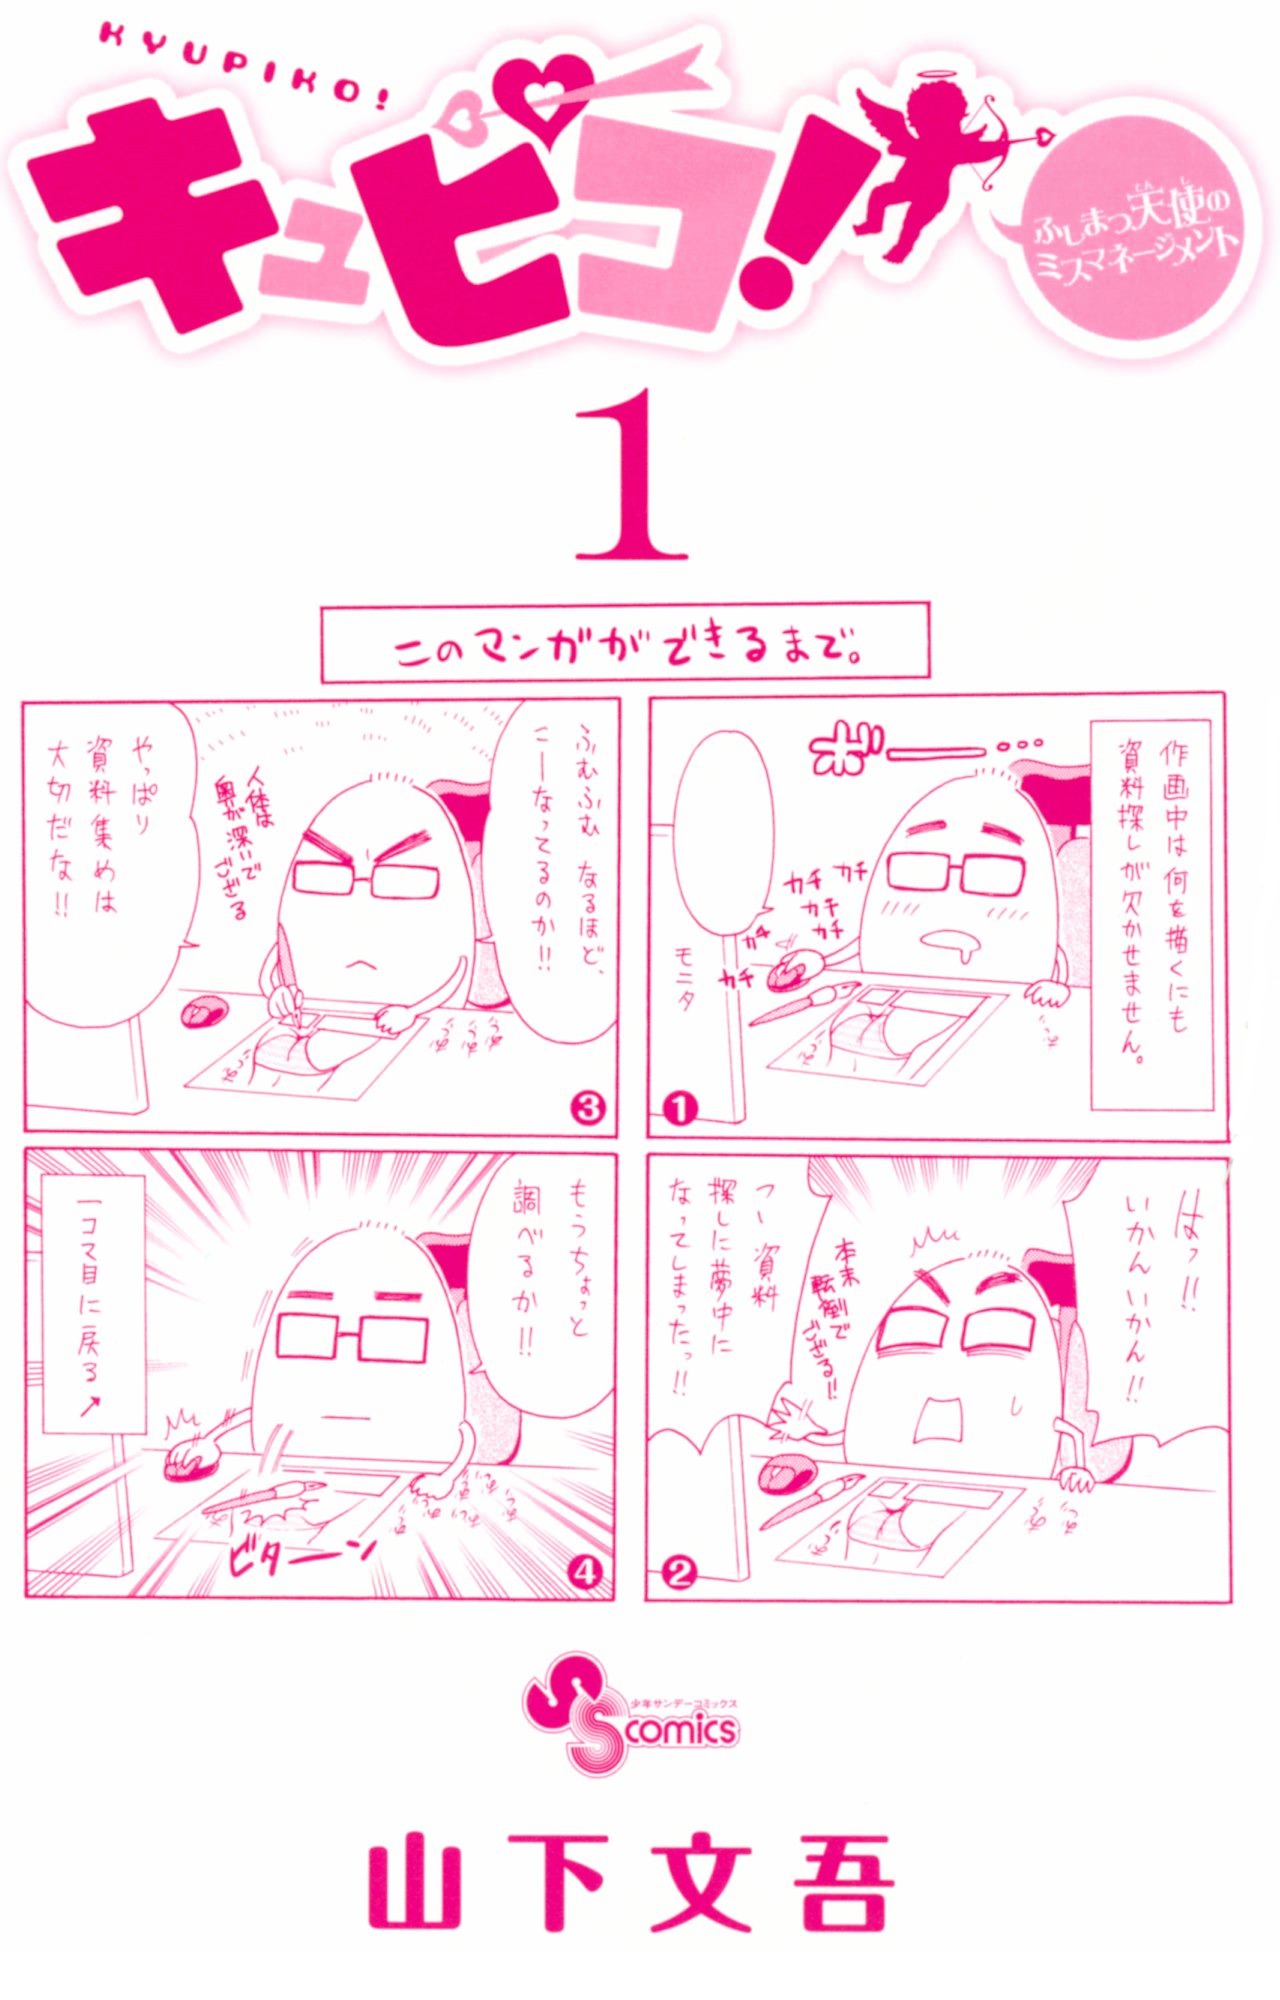 Kyupiko! - Fujimatsu Tenshi no Mismanagement - chapter 1 - #2